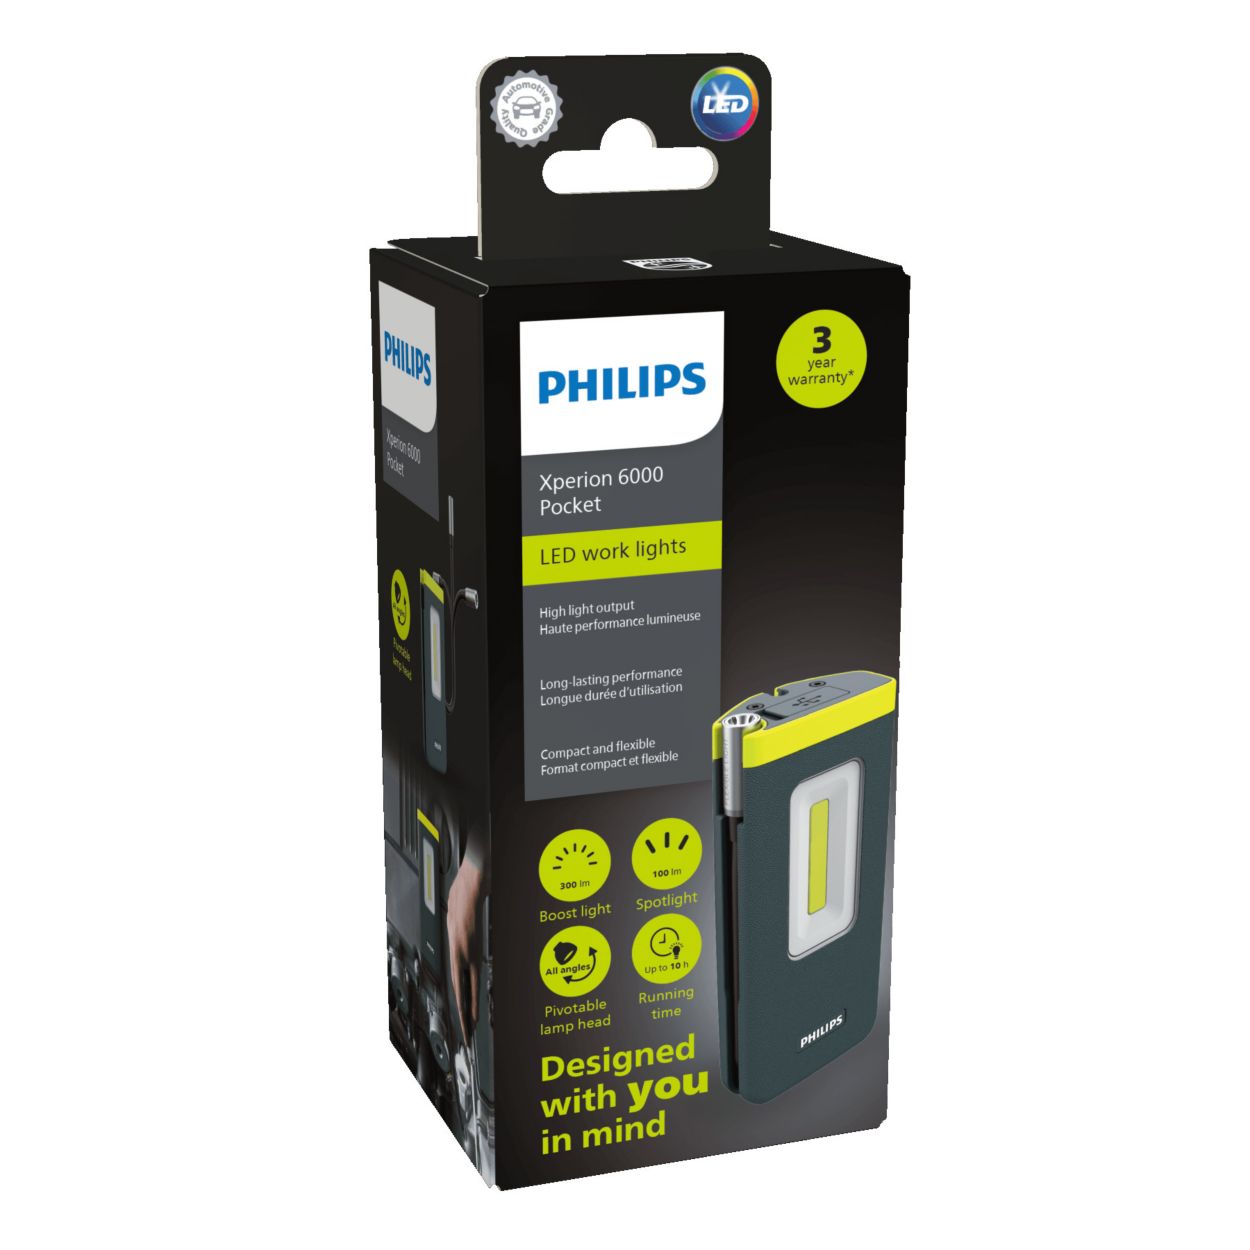 Linterna de mano compacta y potente Xperion 6000 pocket Philips